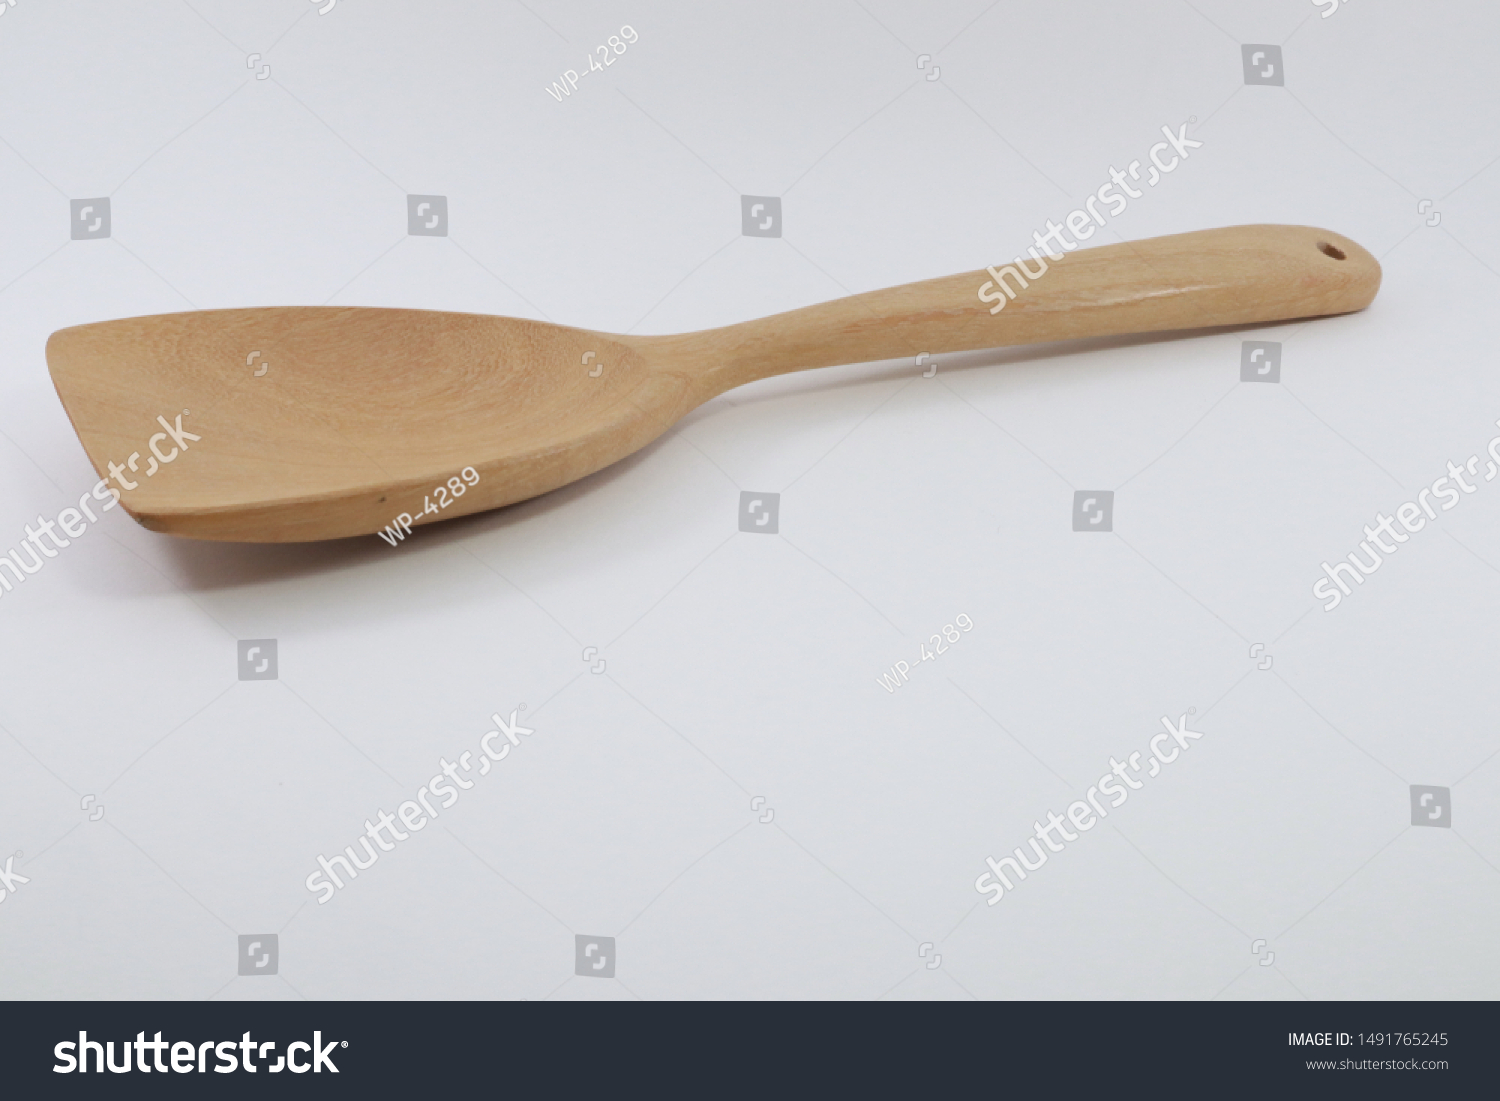 the use of spatula